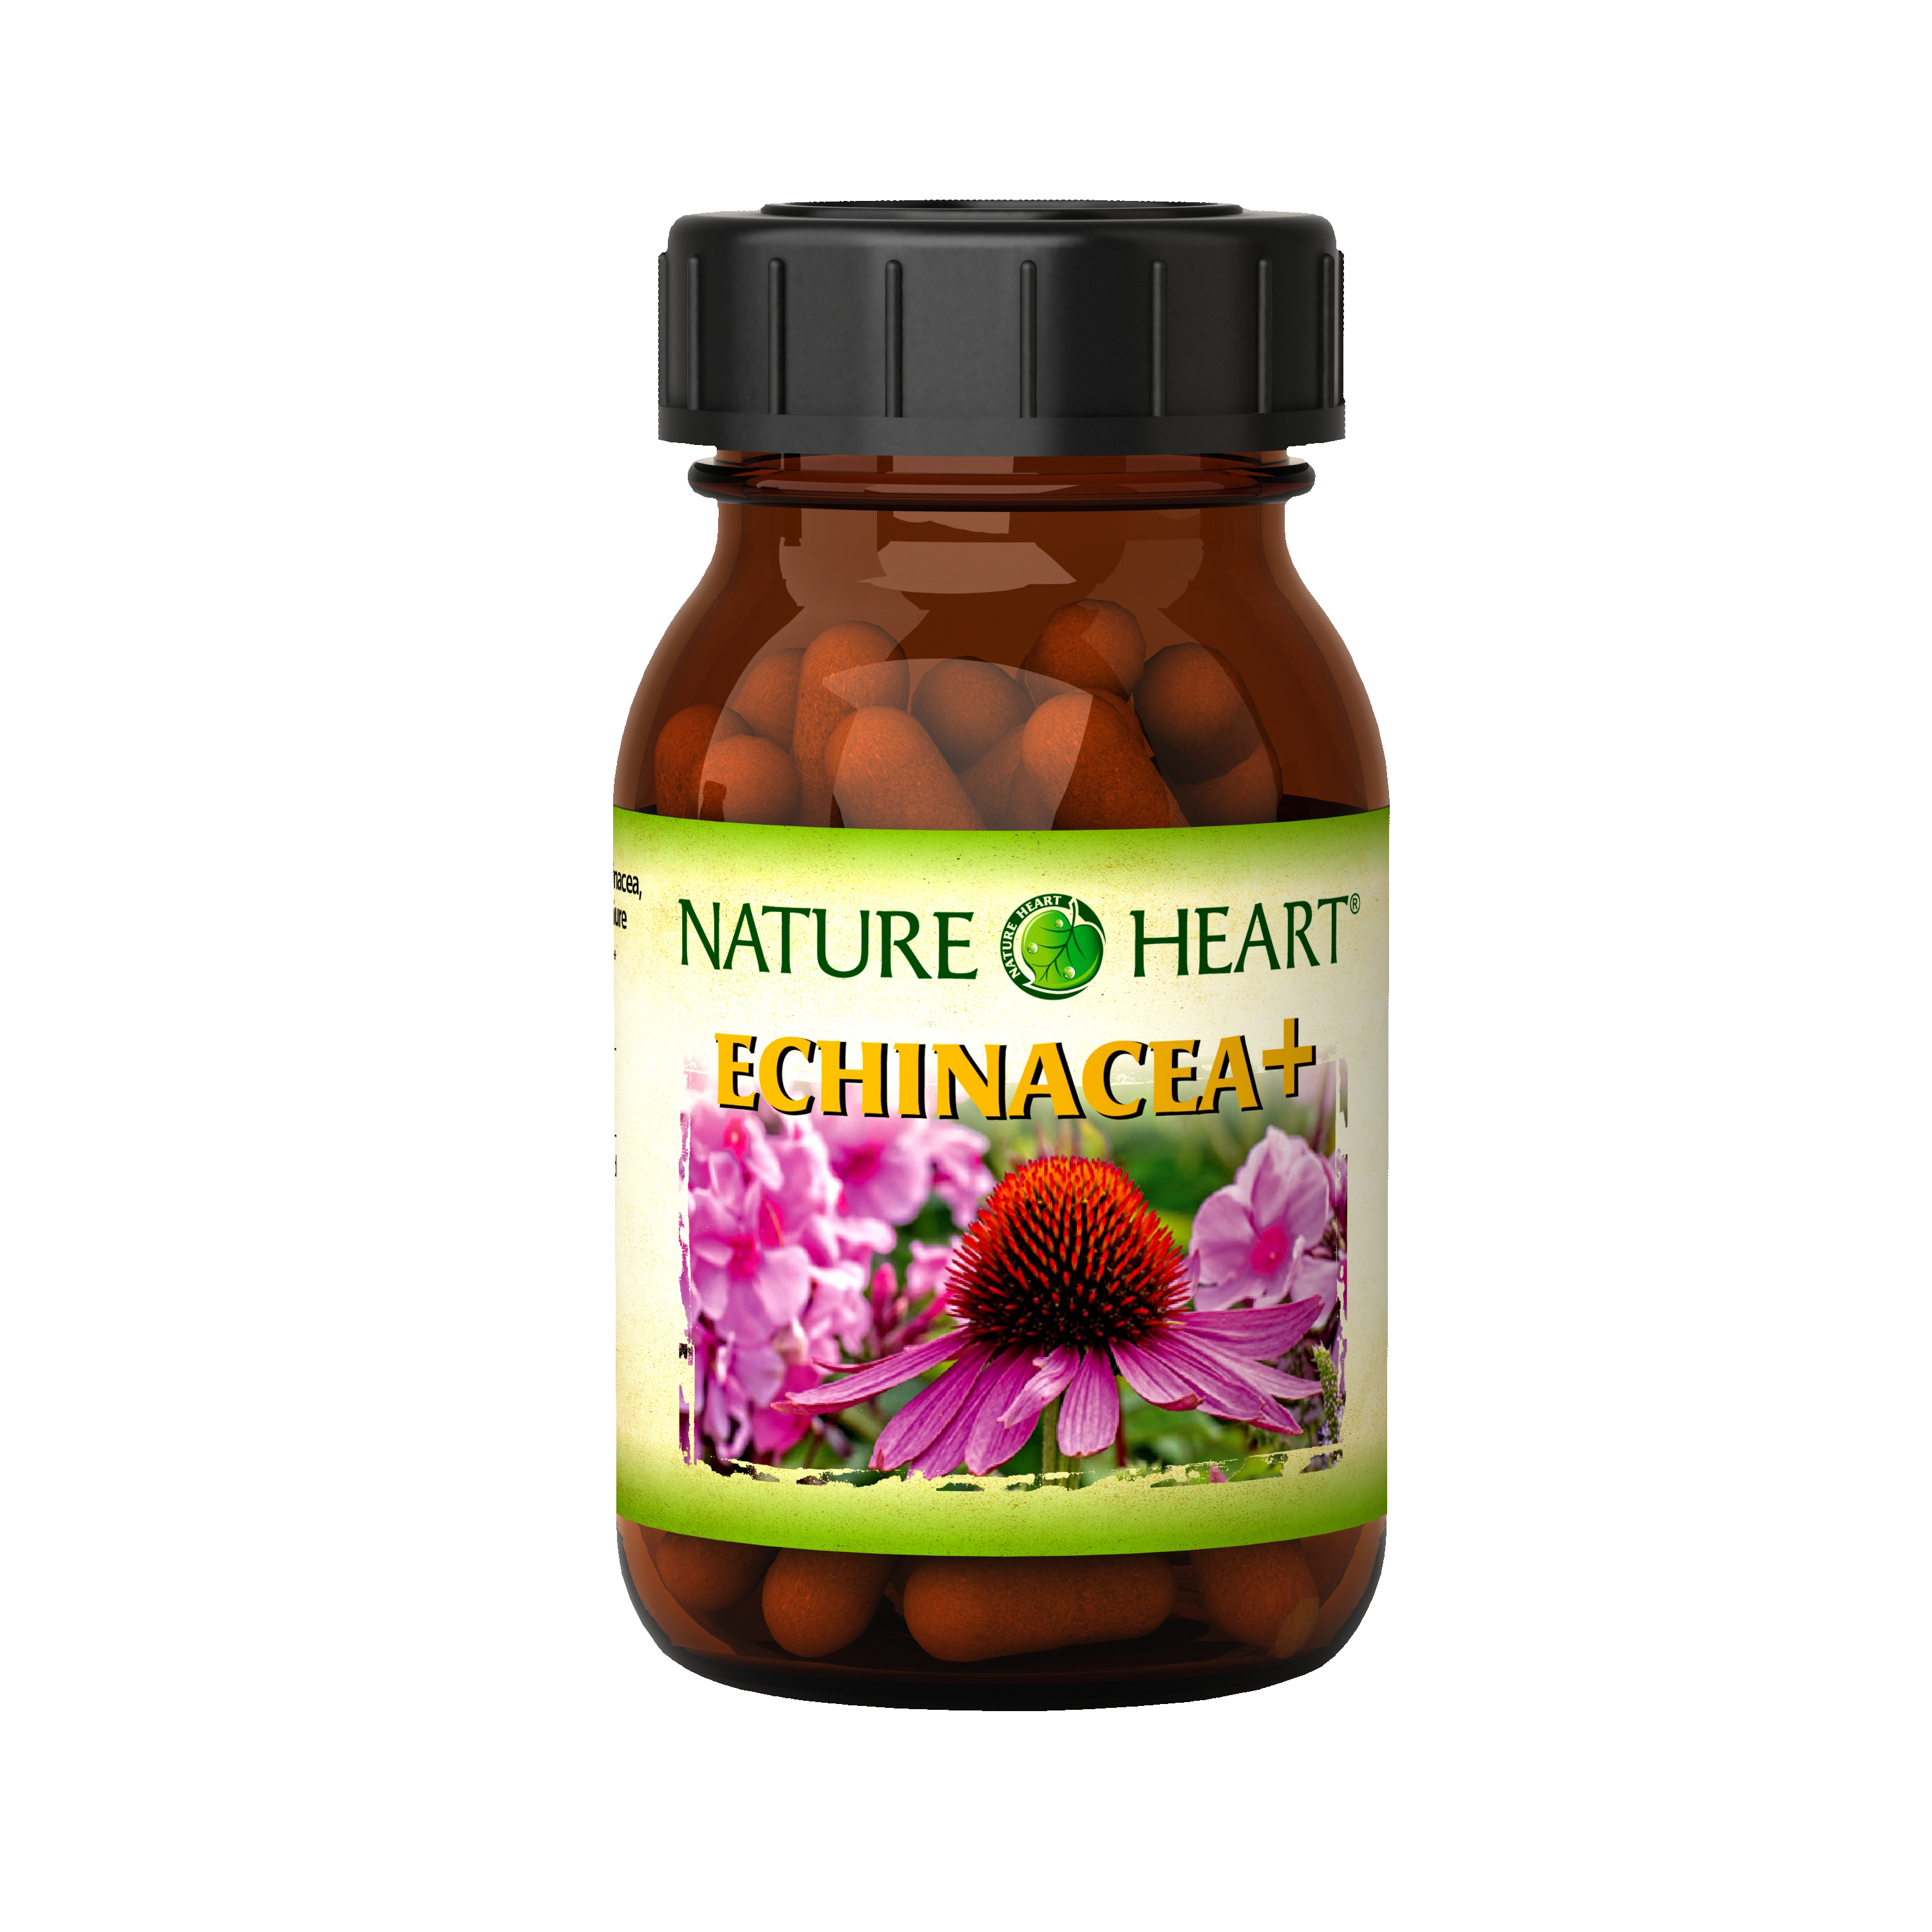 Nature Heart Echinacea + Биологически активная добавка с экстрактами избранных растений, гриба шиитаке и фолиевой кислотой, 60 капсул